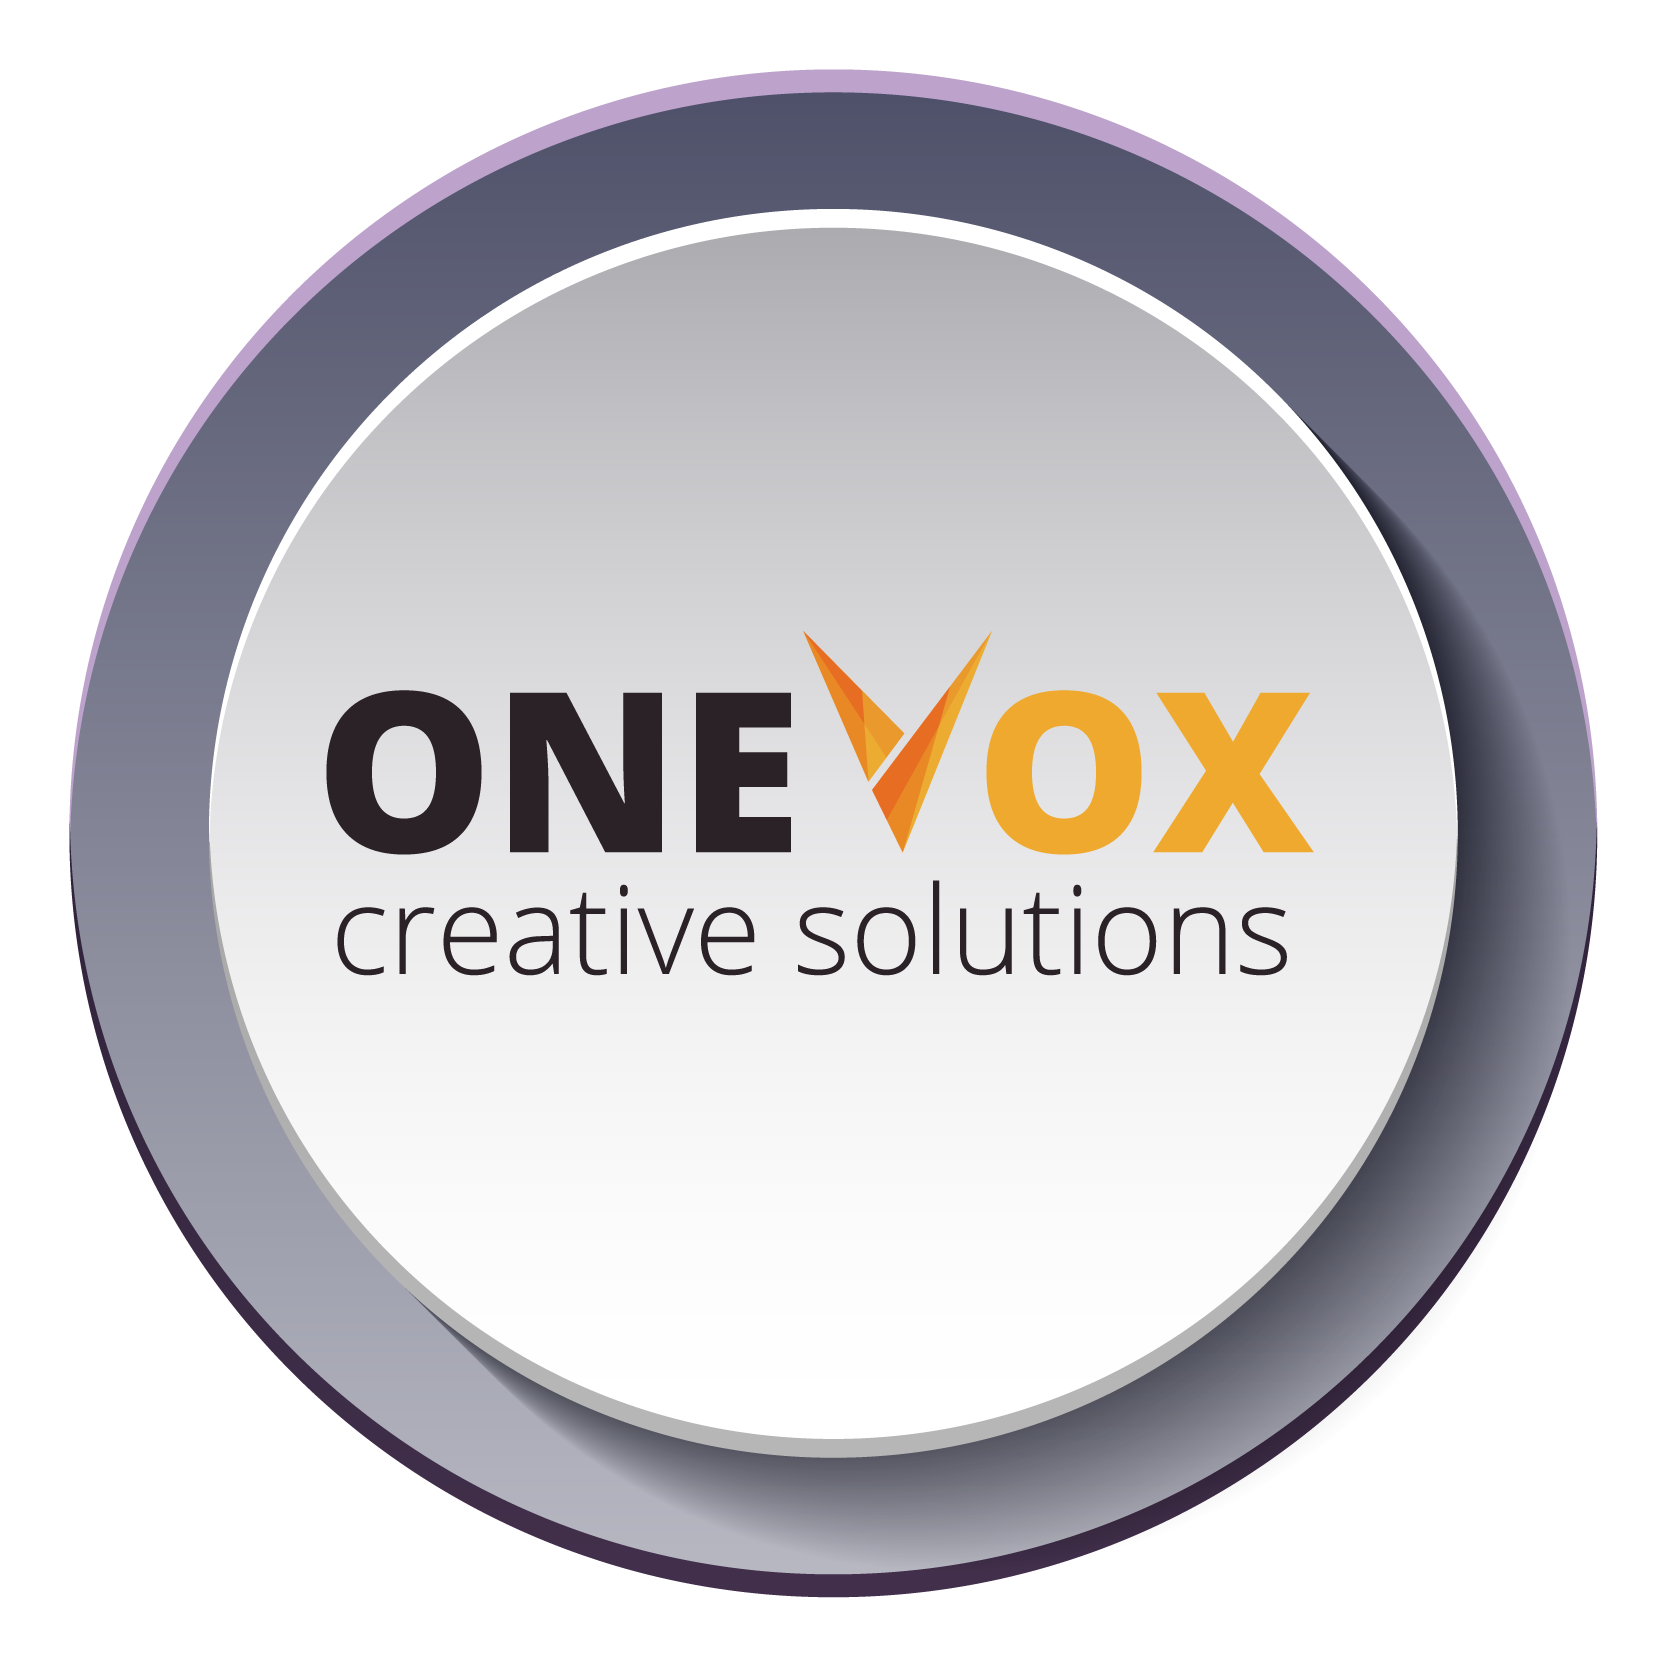 Onevox Press